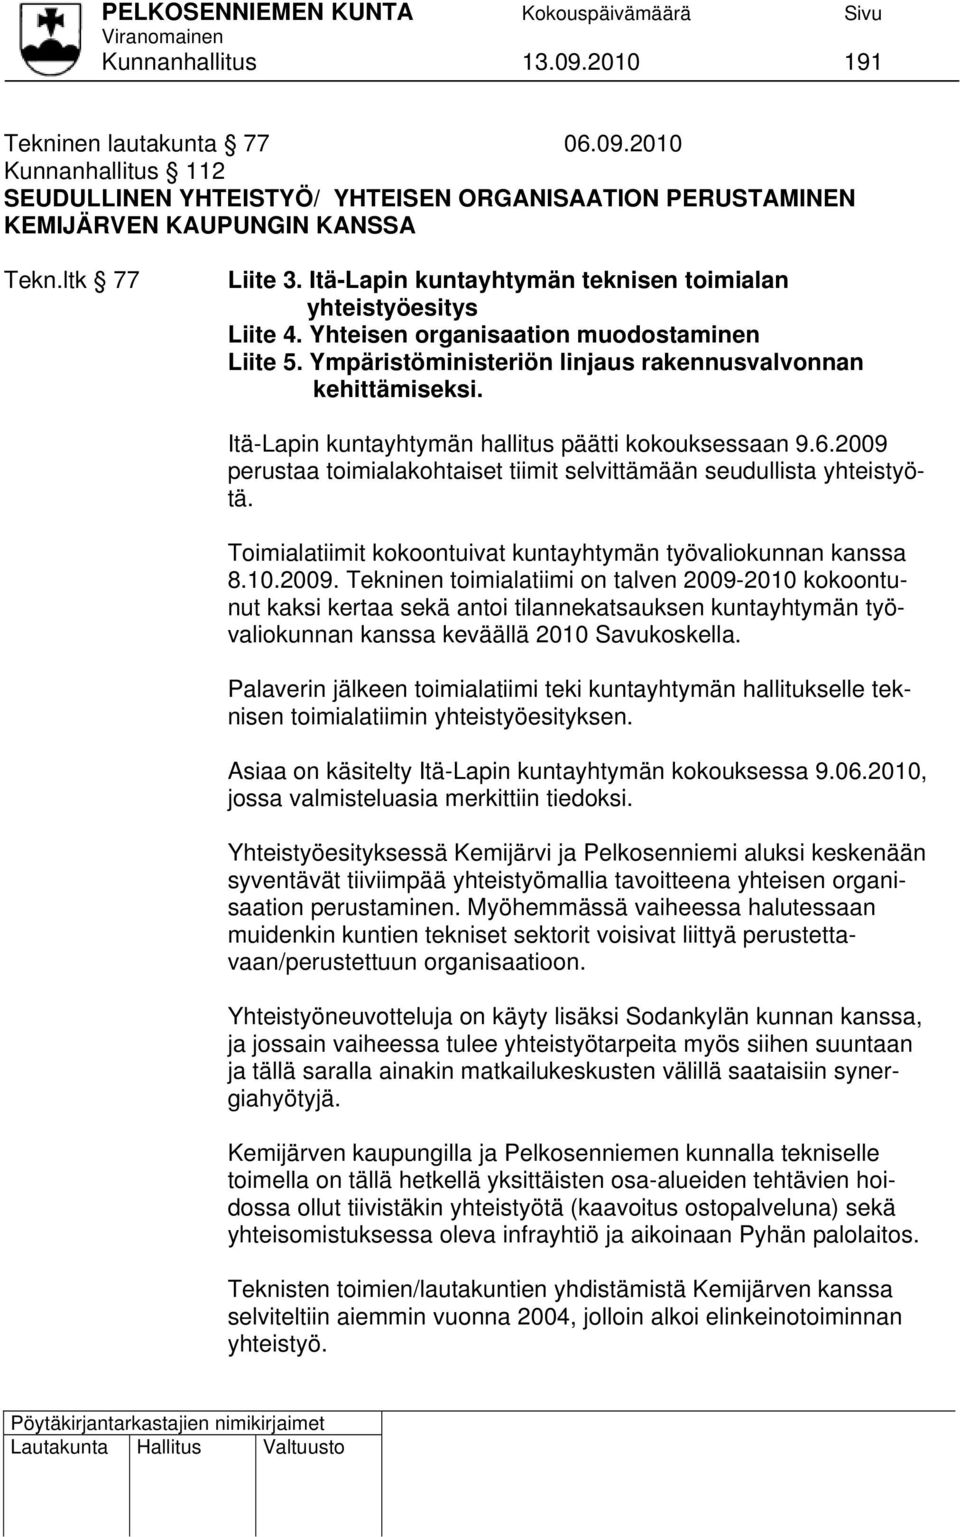 Itä-Lapin kuntayhtymän hallitus päätti kokouksessaan 9.6.2009 perustaa toimialakohtaiset tiimit selvittämään seudullista yhteistyötä. Toimialatiimit kokoontuivat kuntayhtymän työvaliokunnan kanssa 8.